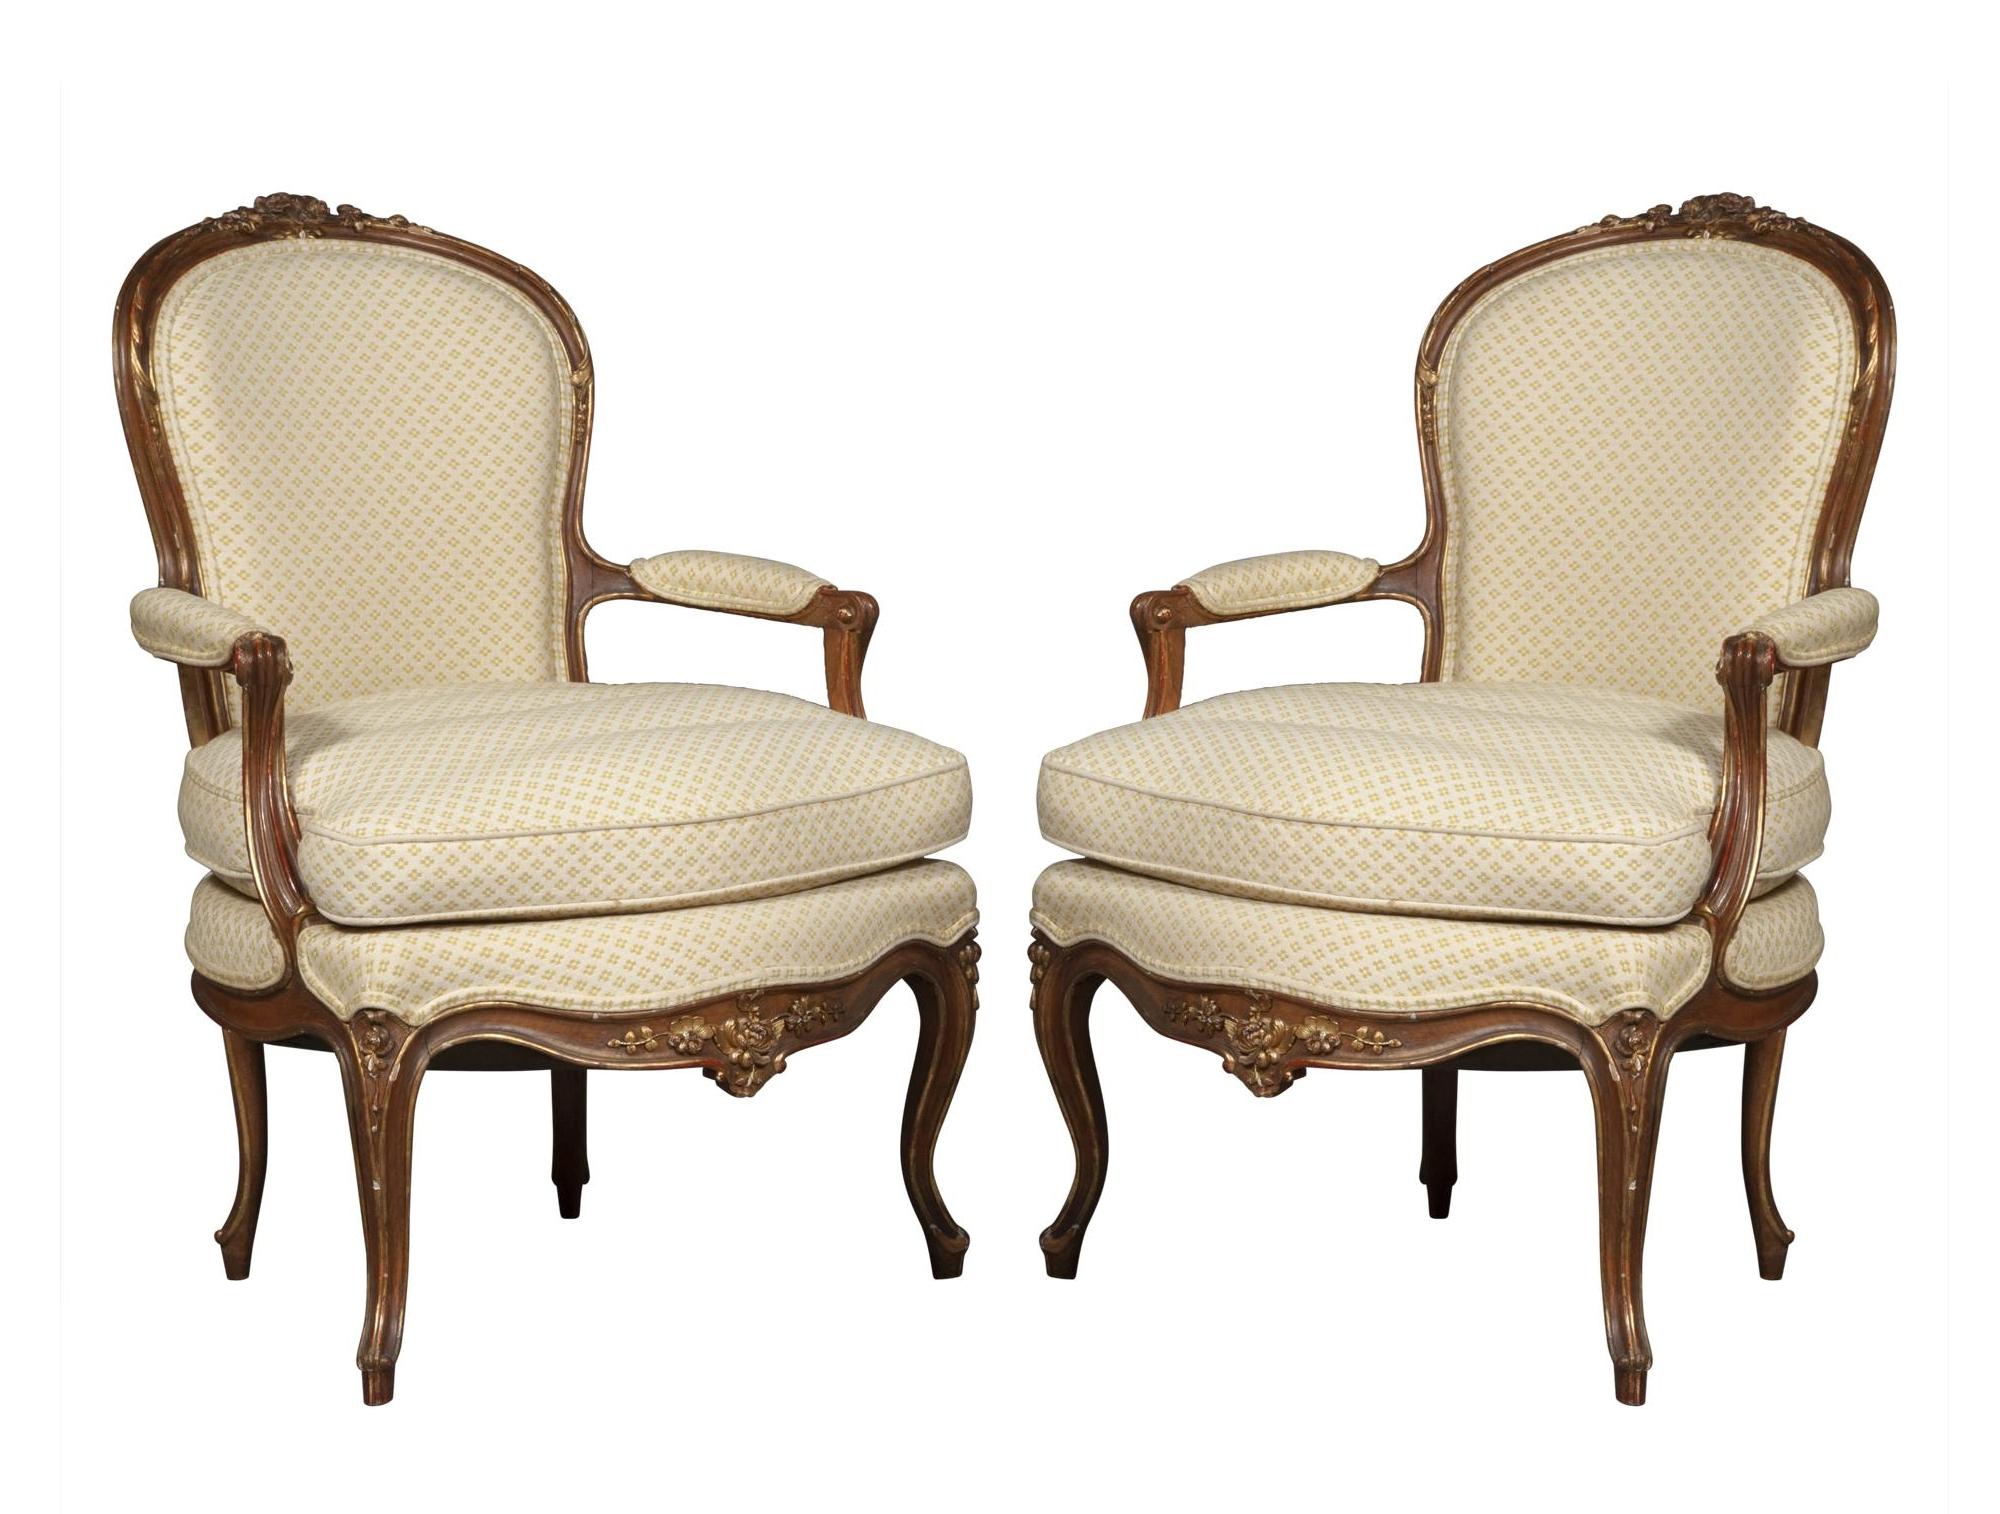 Tauchen Sie ein in die zeitlose Eleganz unserer exquisiten französischen Louis XV-Sessel aus patiniertem Walnussholz vom Ende des 19. Jahrhunderts. Die mit viel Liebe zum Detail gefertigten Stühle verfügen über ein Gestell mit kunstvoll